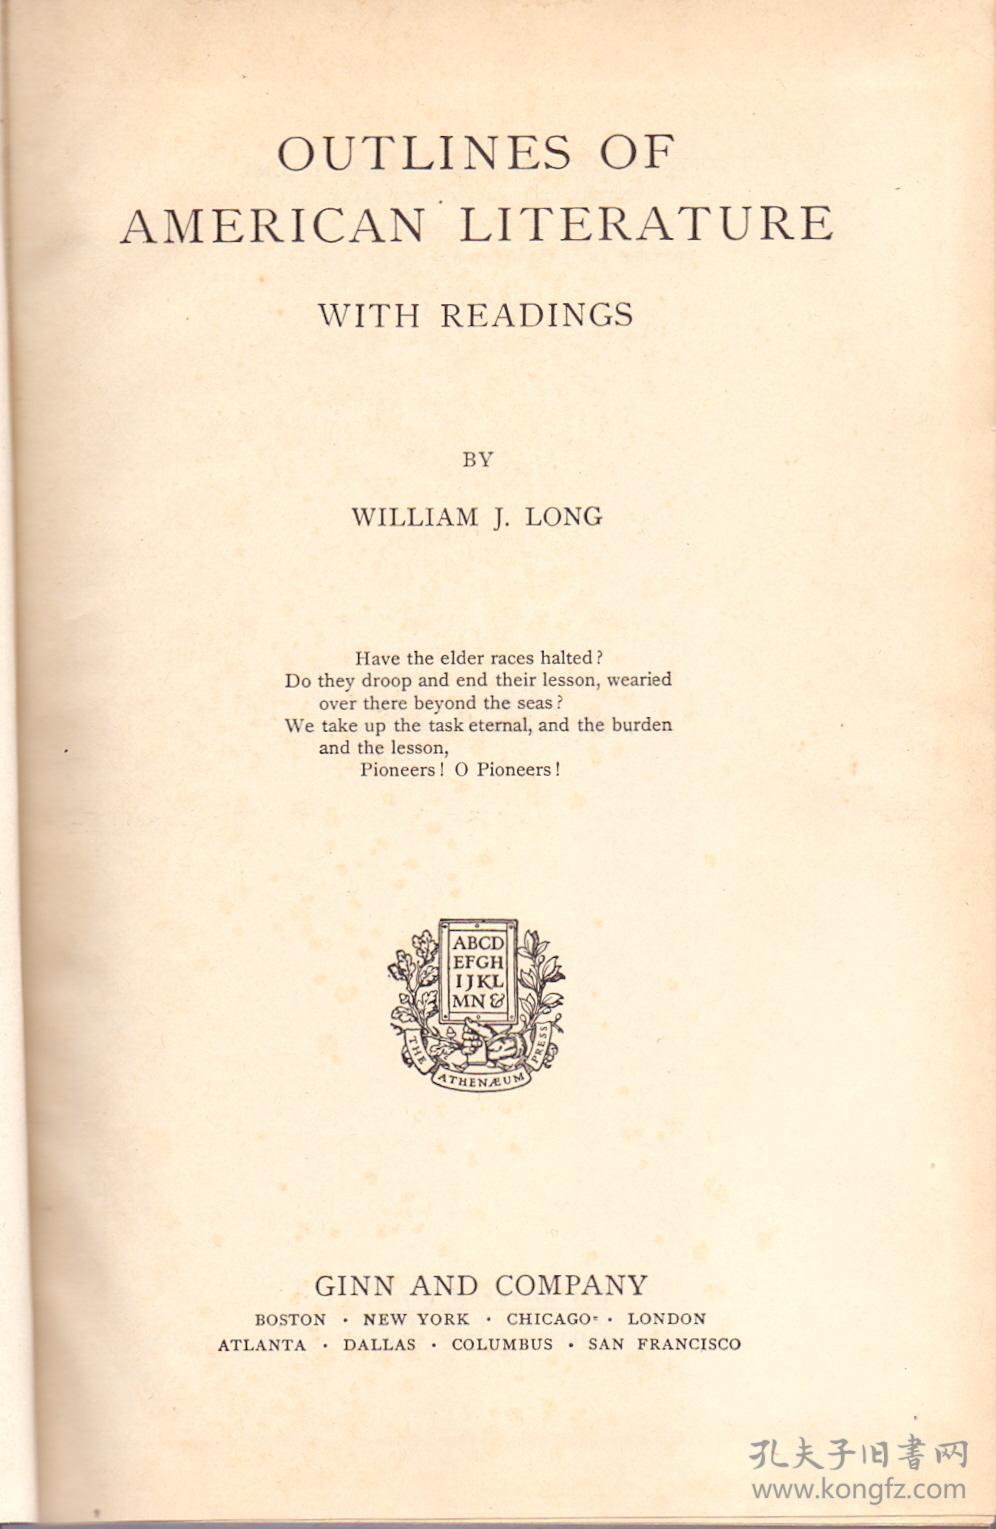 《美国文学大纲》精装 Outlines of American Literature with Readings by William Long  1925年